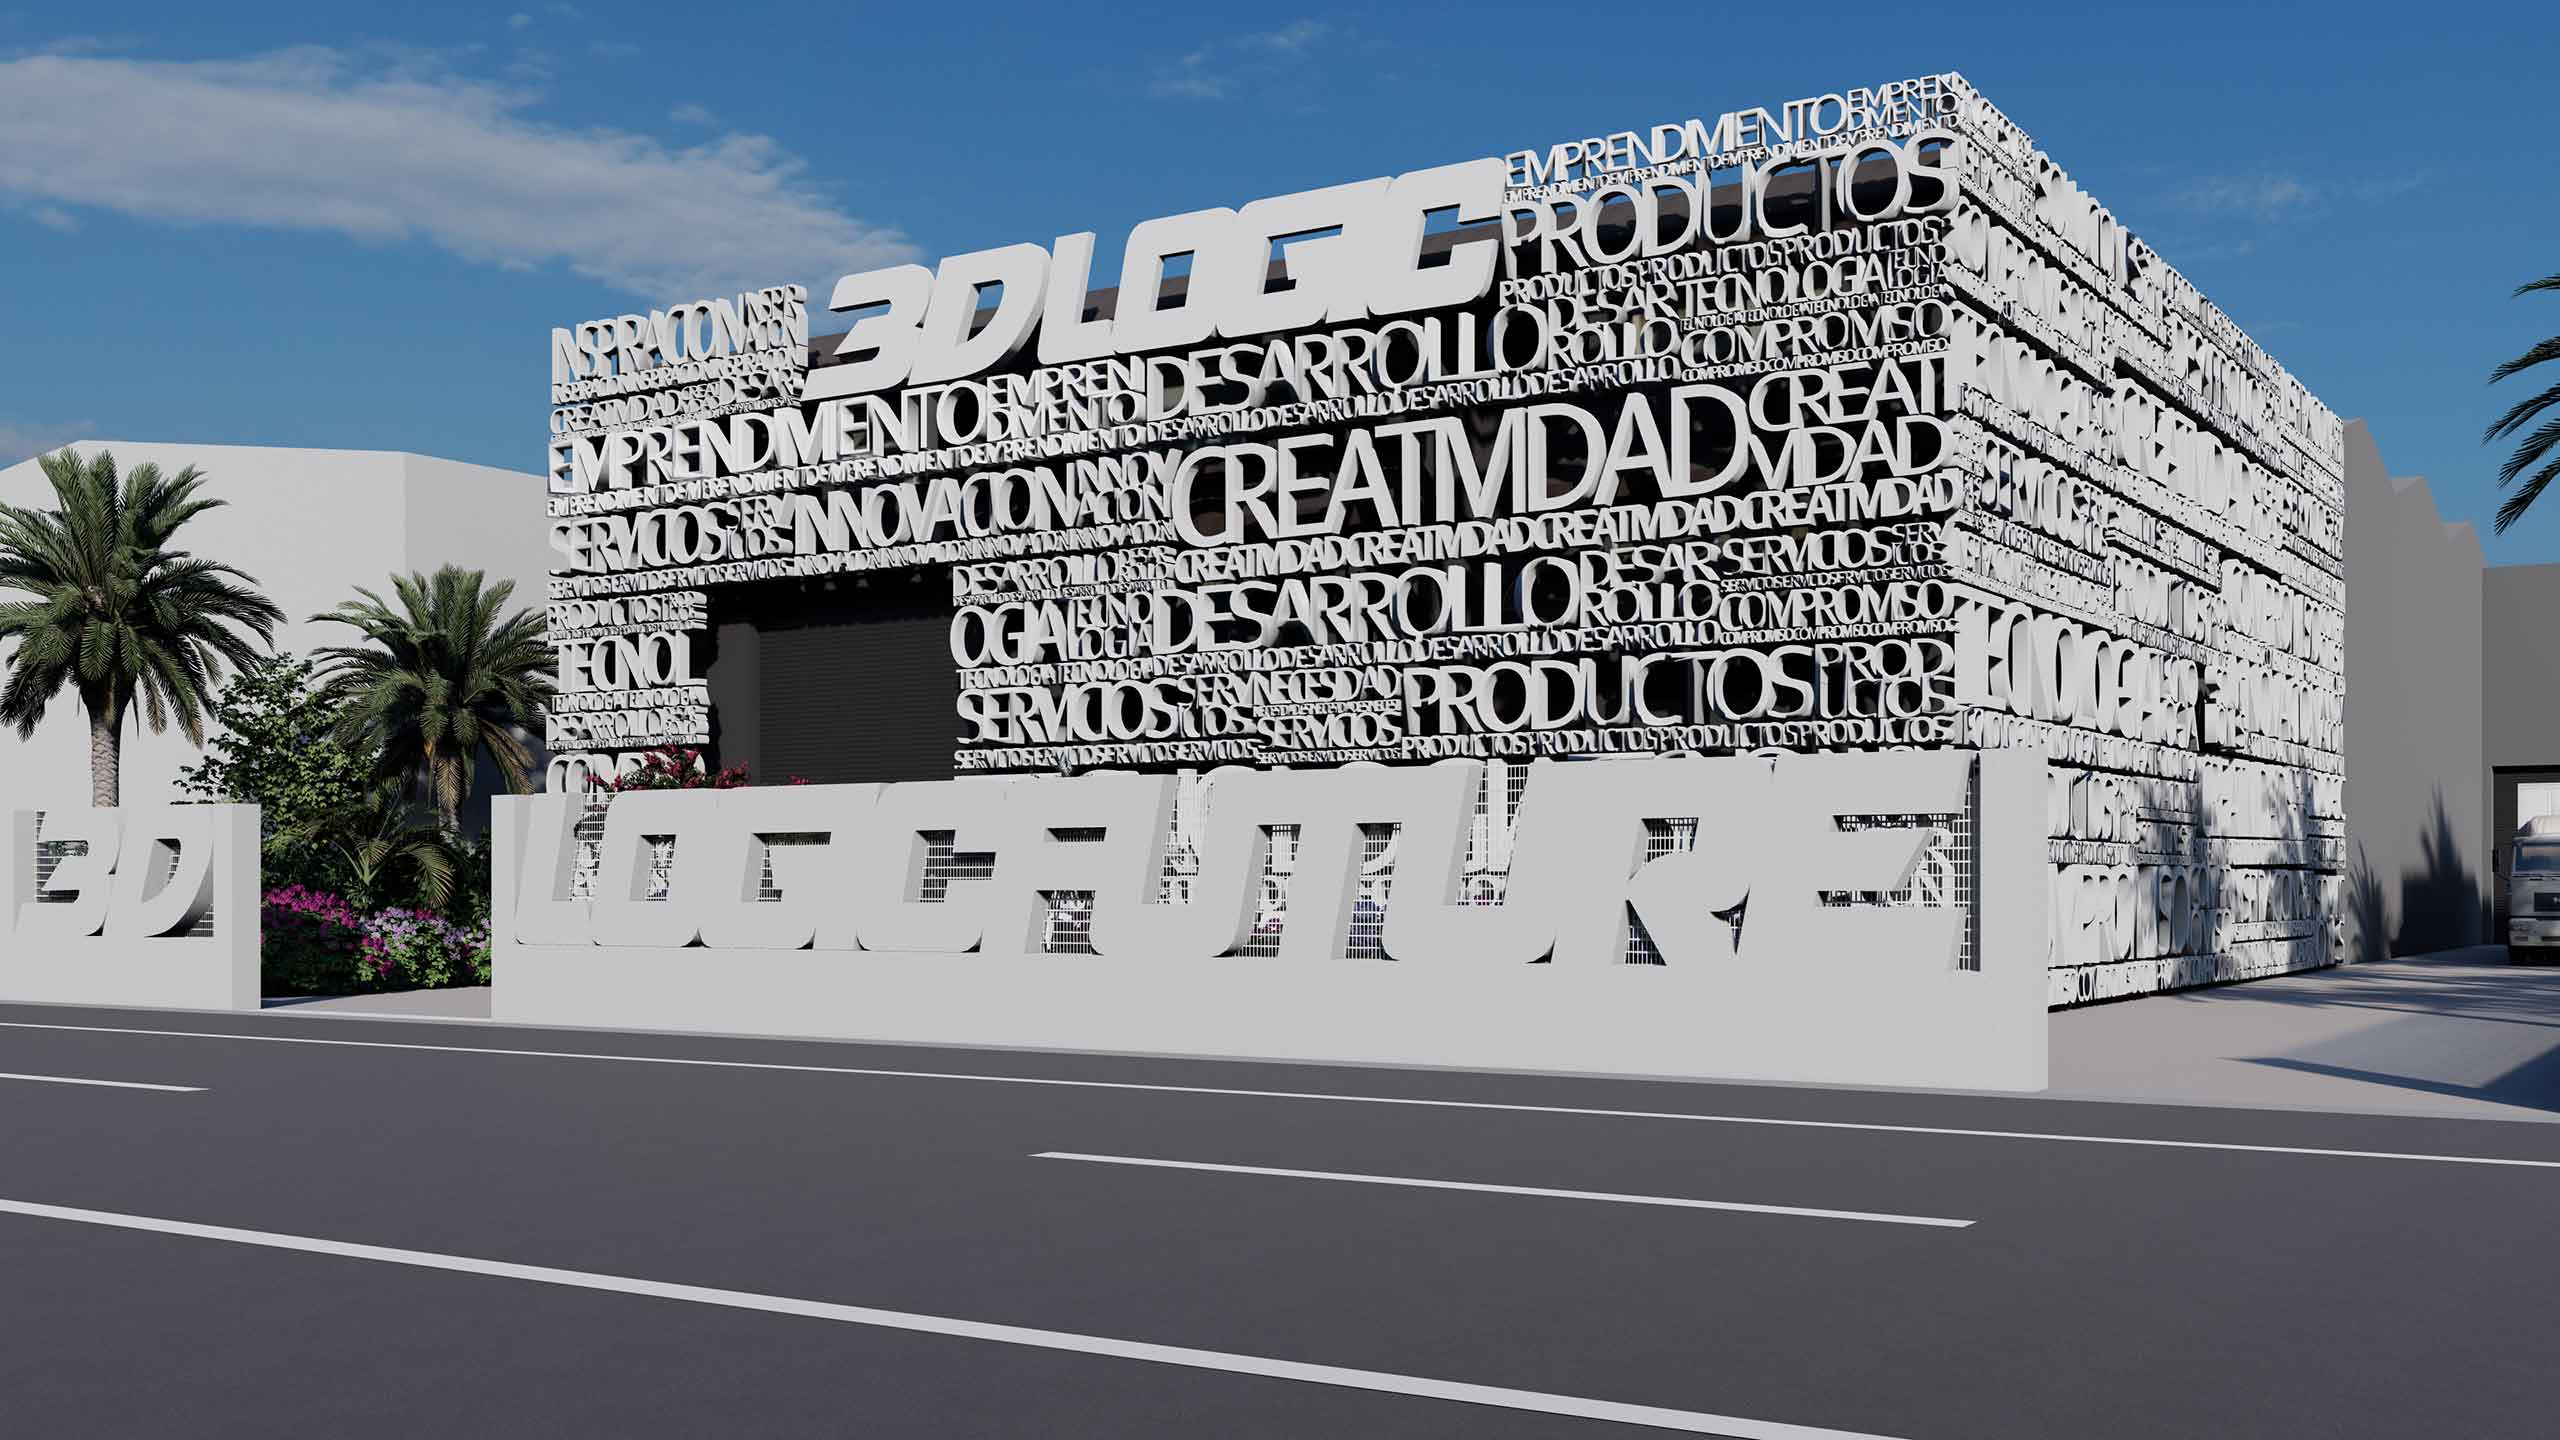 Дизайн фасада компании 3D Logic Future